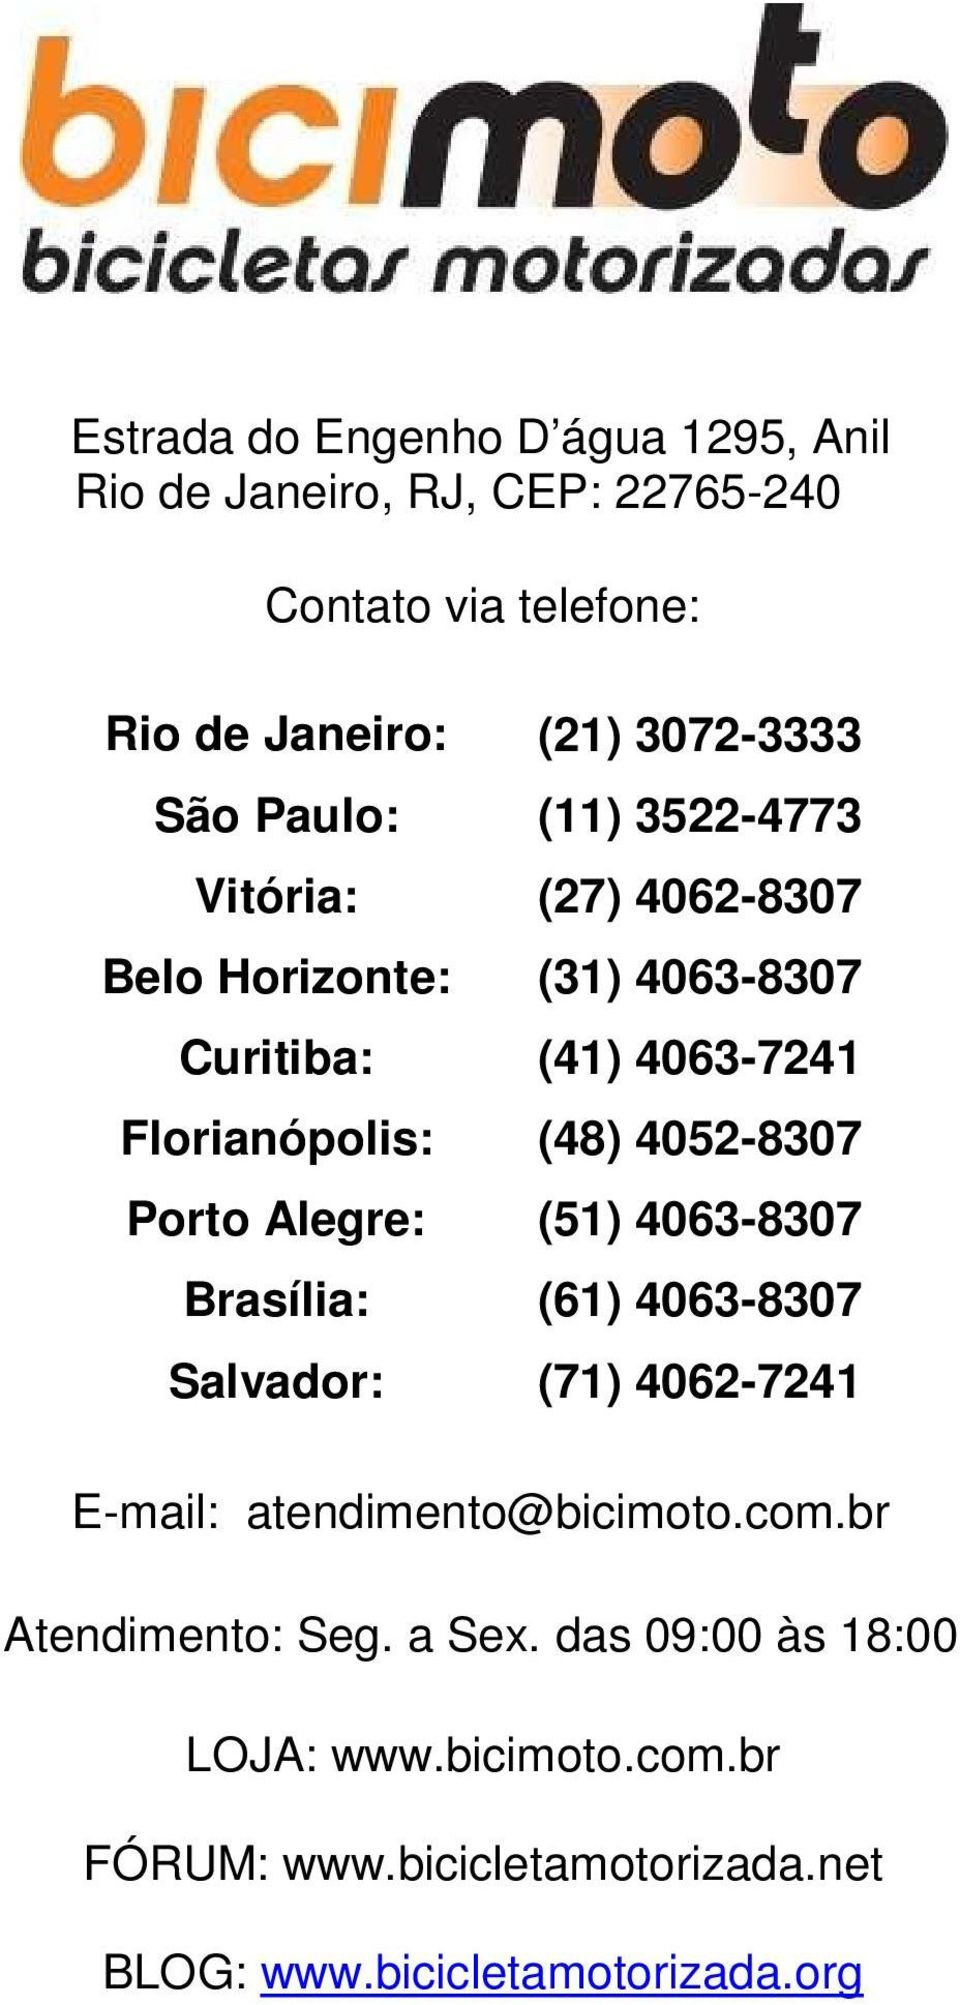 4052-8307 Porto Alegre: (51) 4063-8307 Brasília: (61) 4063-8307 Salvador: (71) 4062-7241 E-mail: atendimento@bicimoto.com.